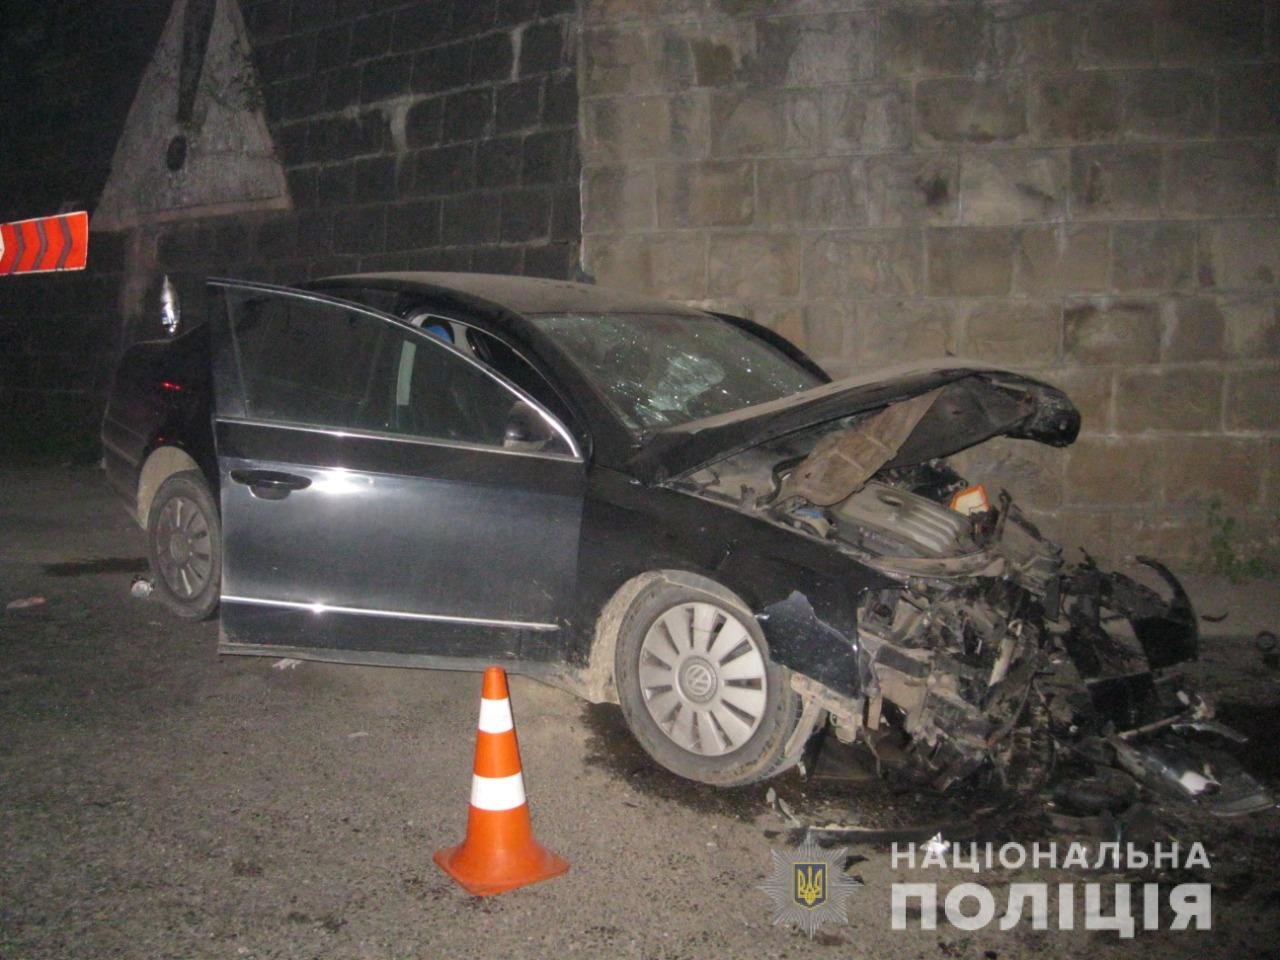 Авто втаранилося у стіну: закарпатець потрапив у жахливу ДТП у сусідній області (ФОТО)